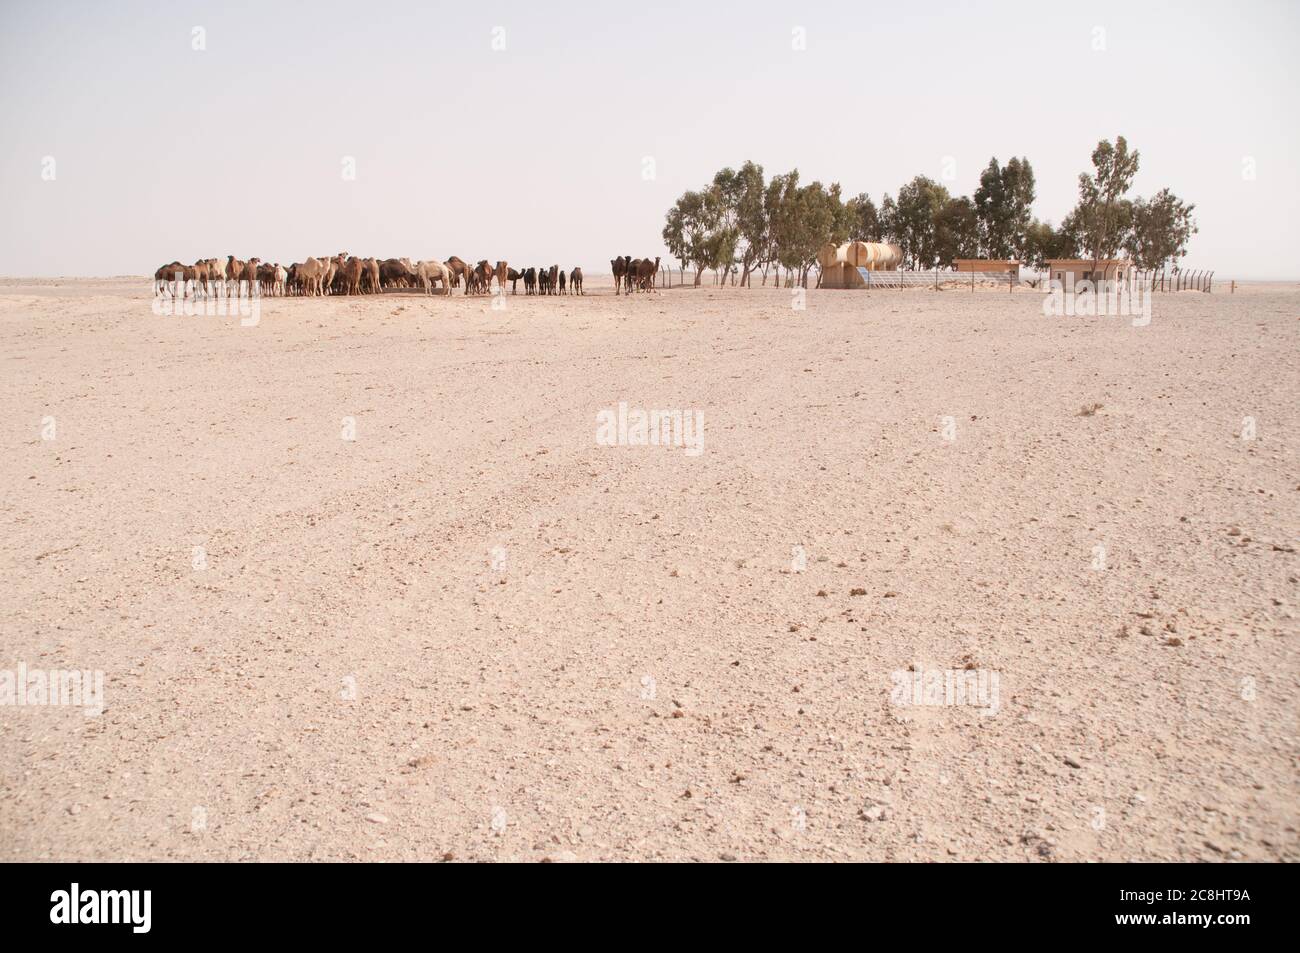 Una manada de camellos árabes domesticados en un pozo de agua en el desierto oriental de la región de Badia, Wadi Dahek, el Reino Hachemita de Jordania. Foto de stock